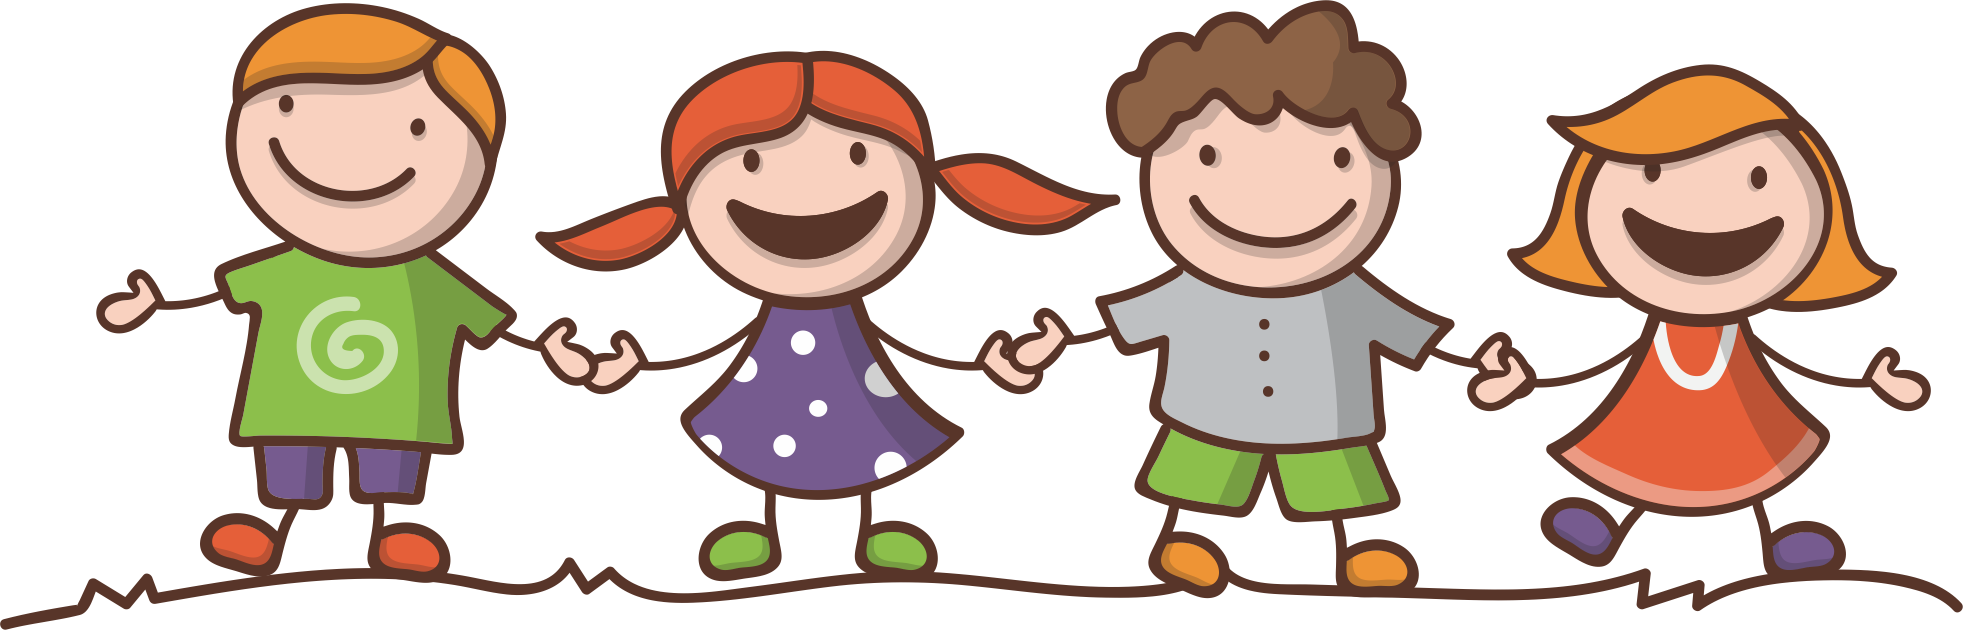 Happy Children Friends Cartoon PNG image